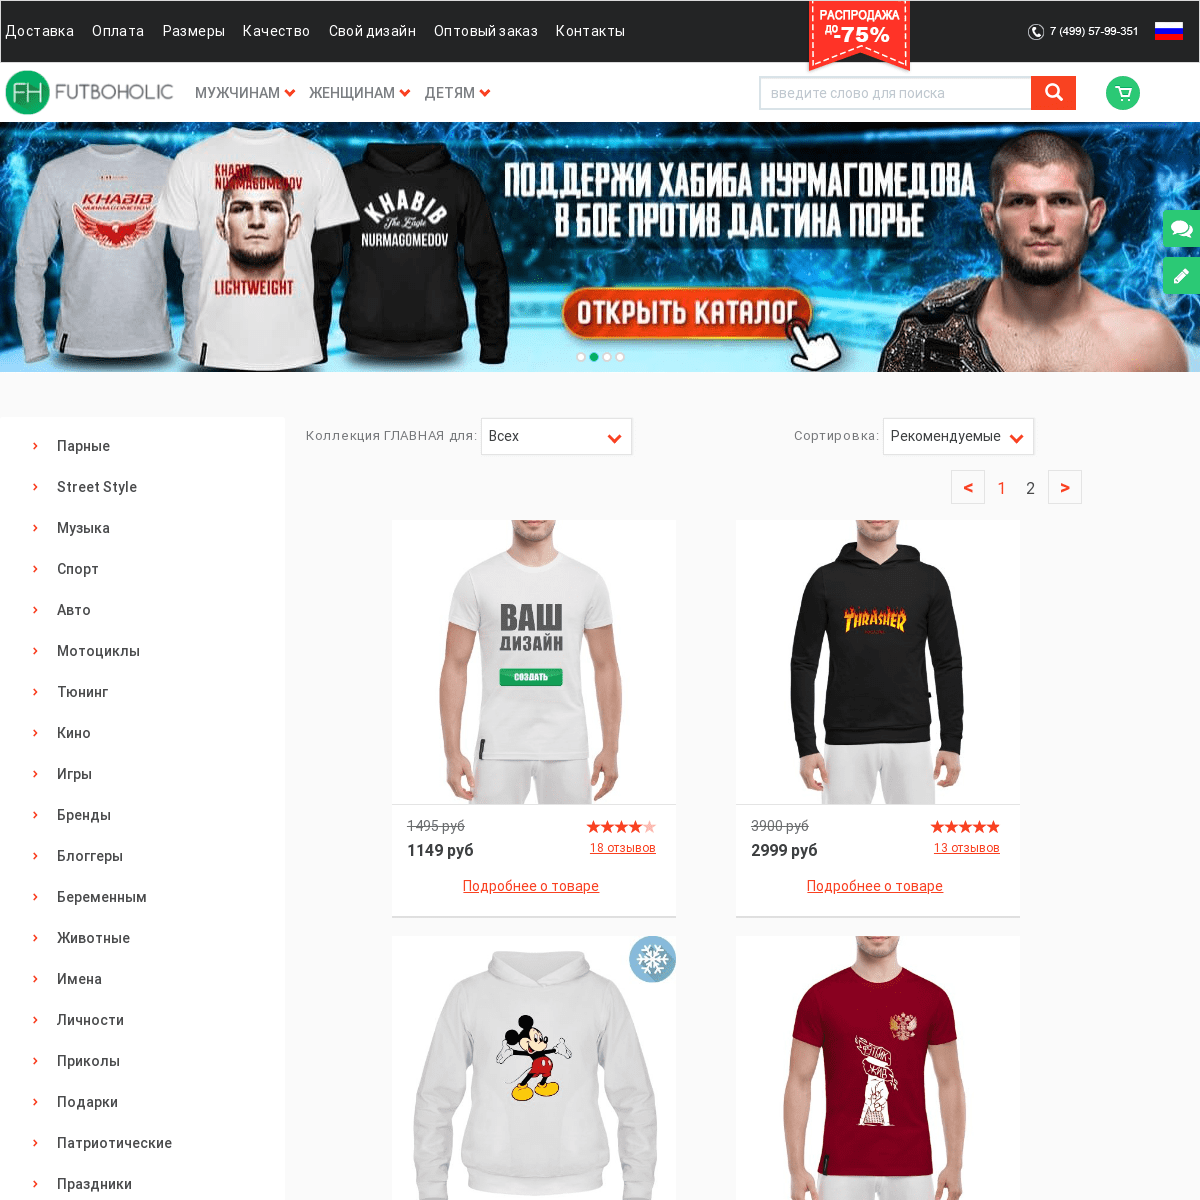 Интернет магазин футболок. Купить футболку в Москве от производителя - Futboholic.ru